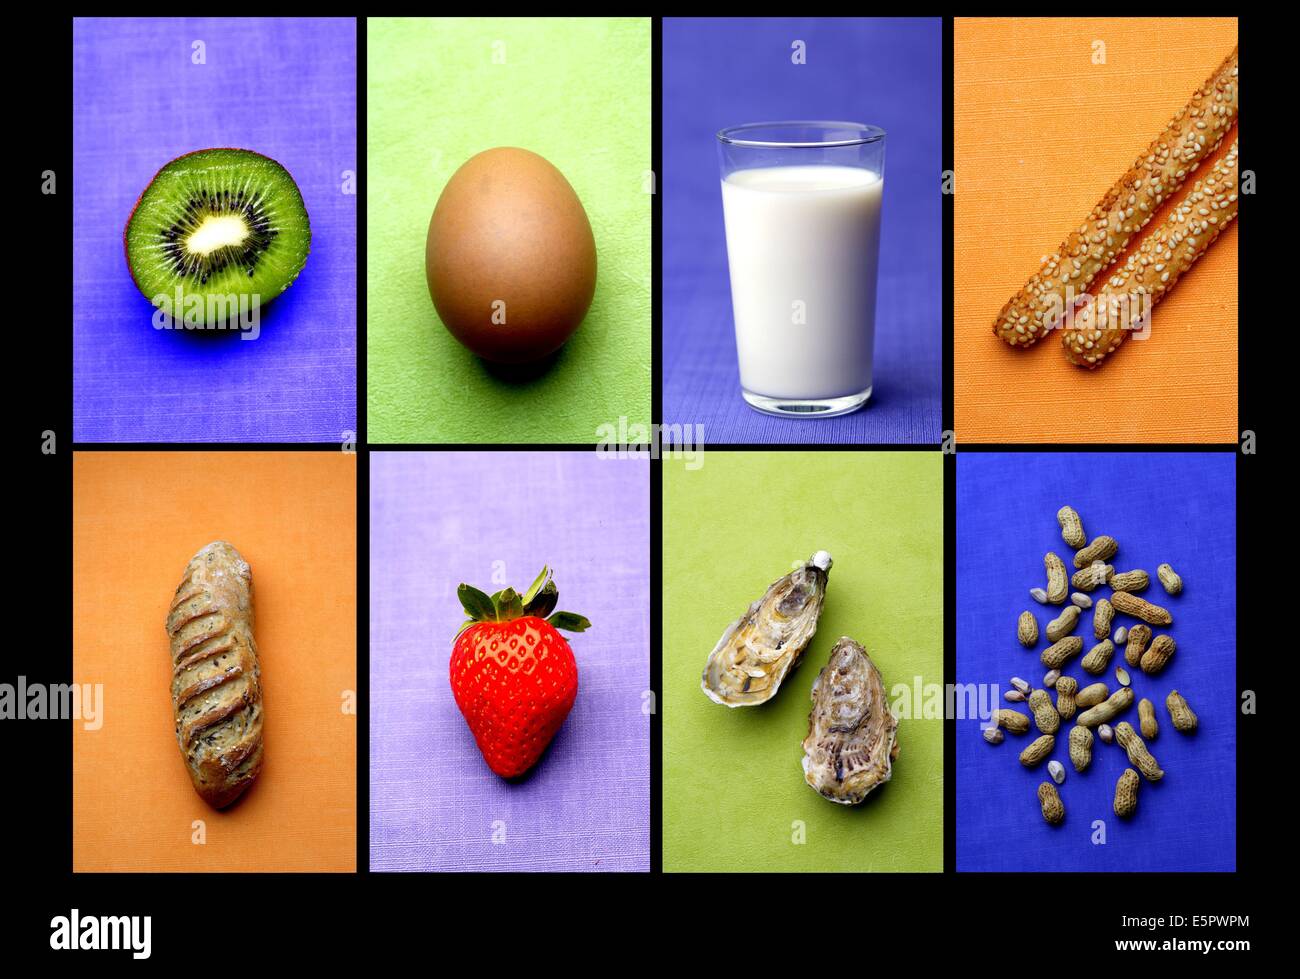 Diferentes productos alimenticios alergénicos. Foto de stock